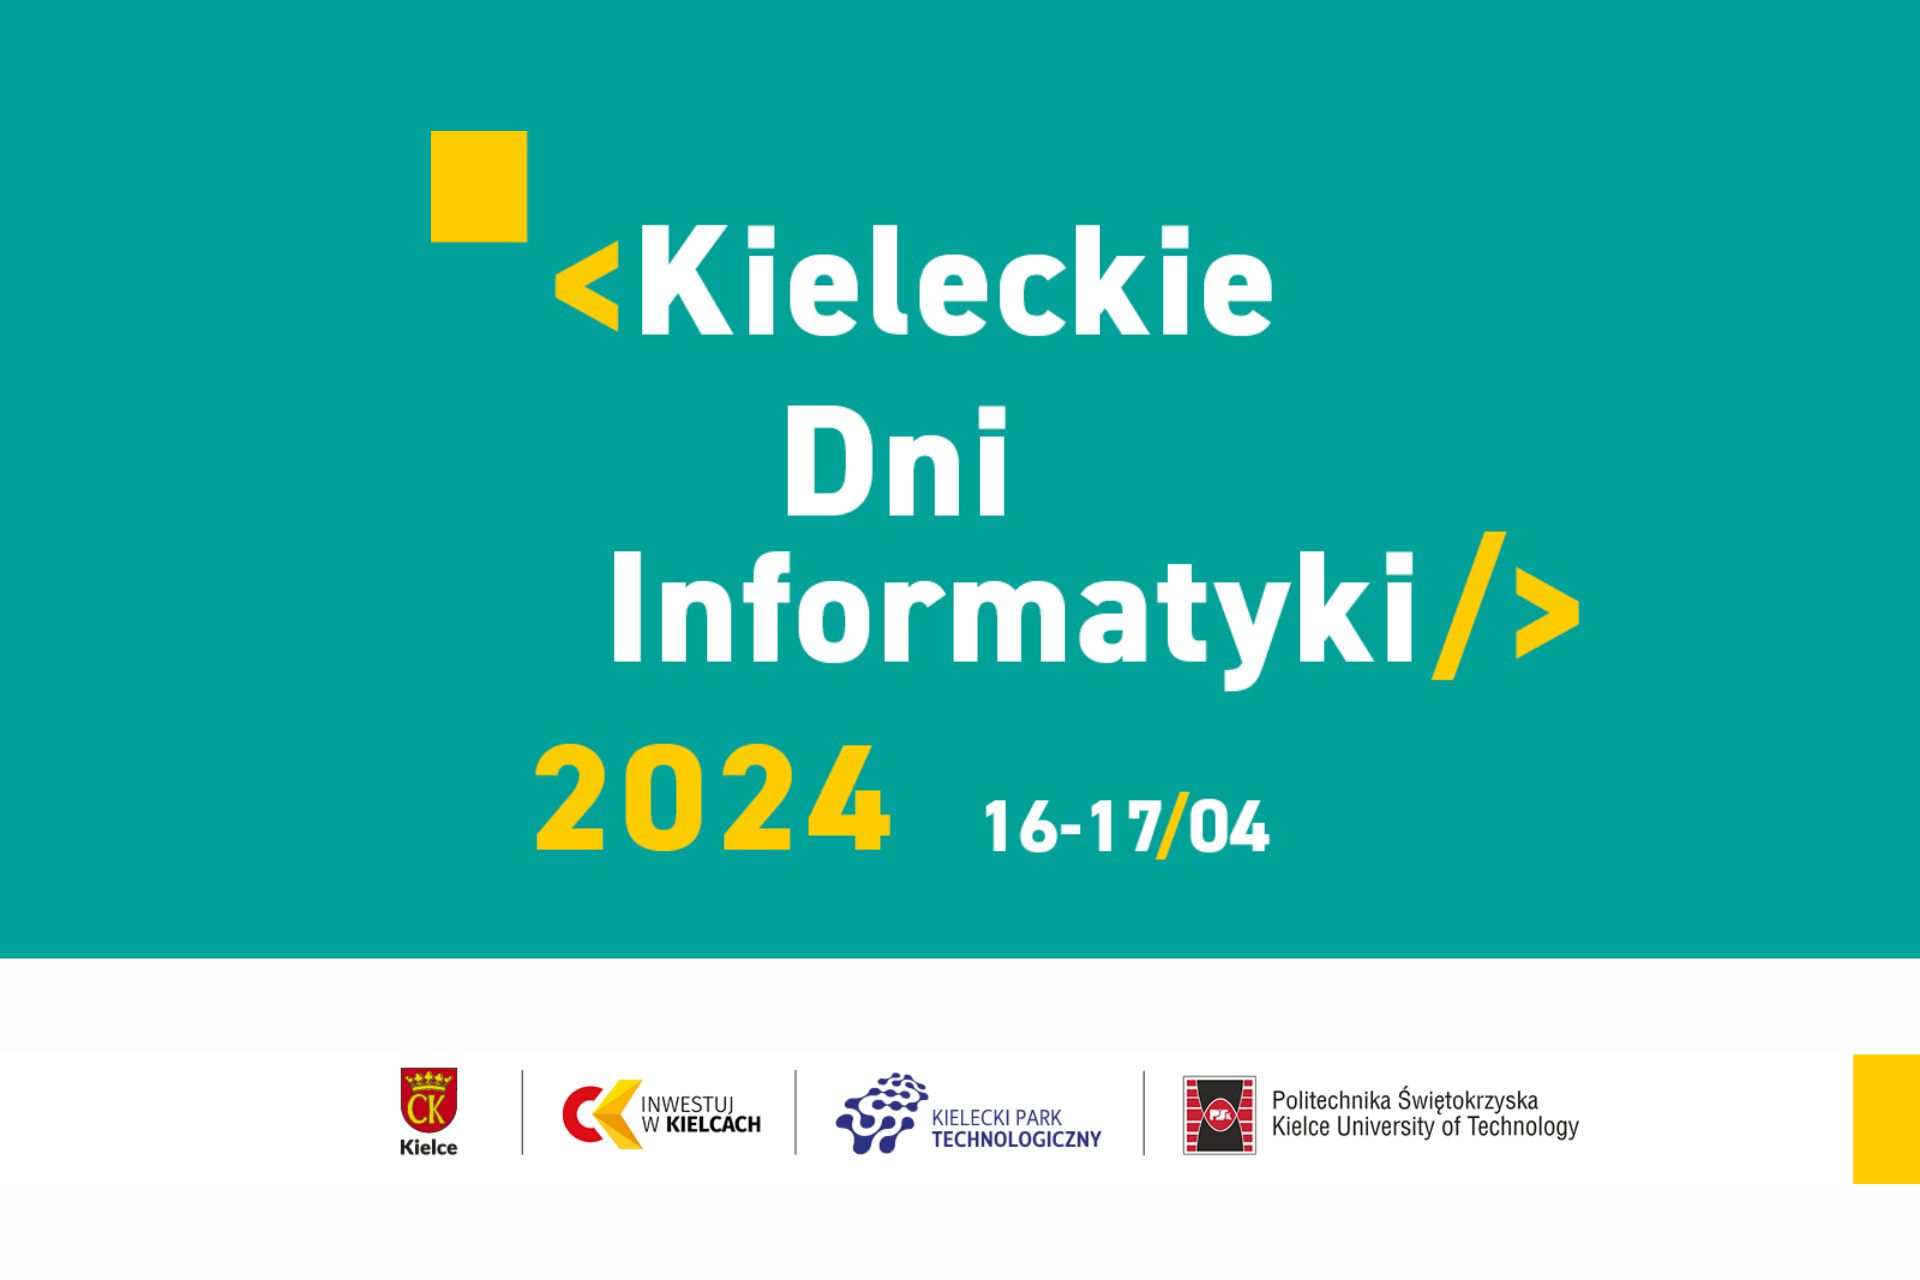 Kieleckie Dni Informatyki 2024